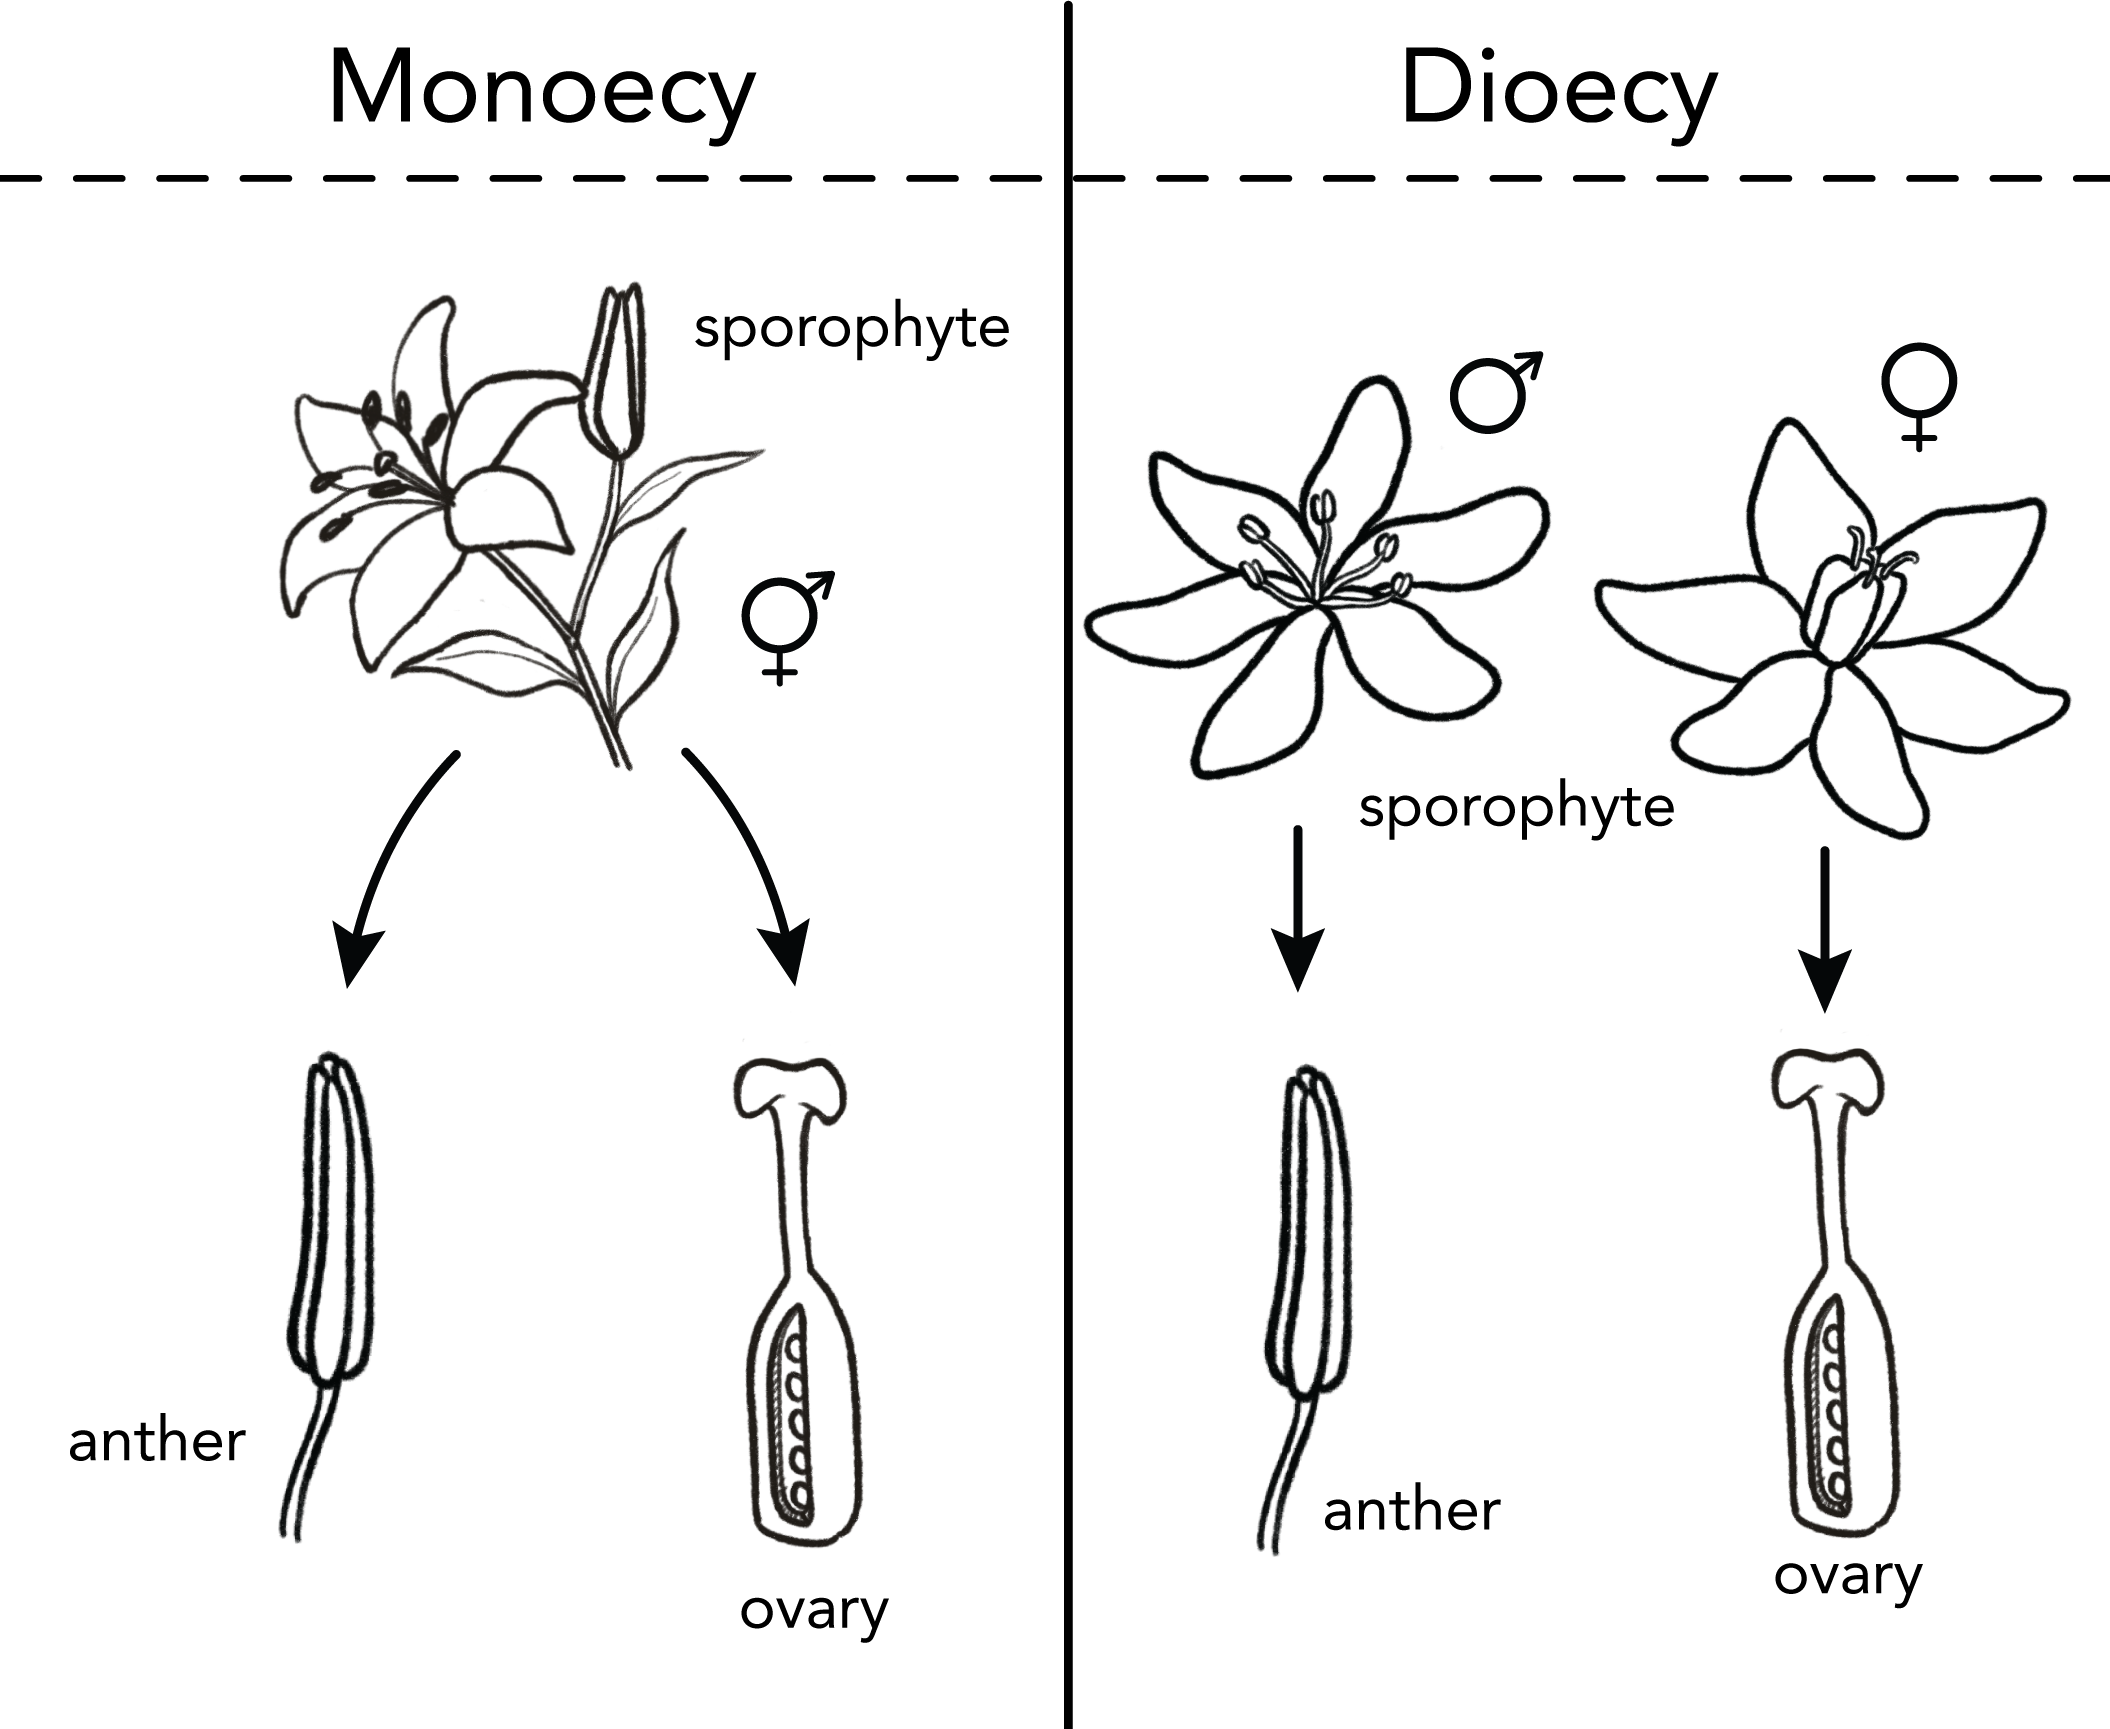 monecy vs. dioecy